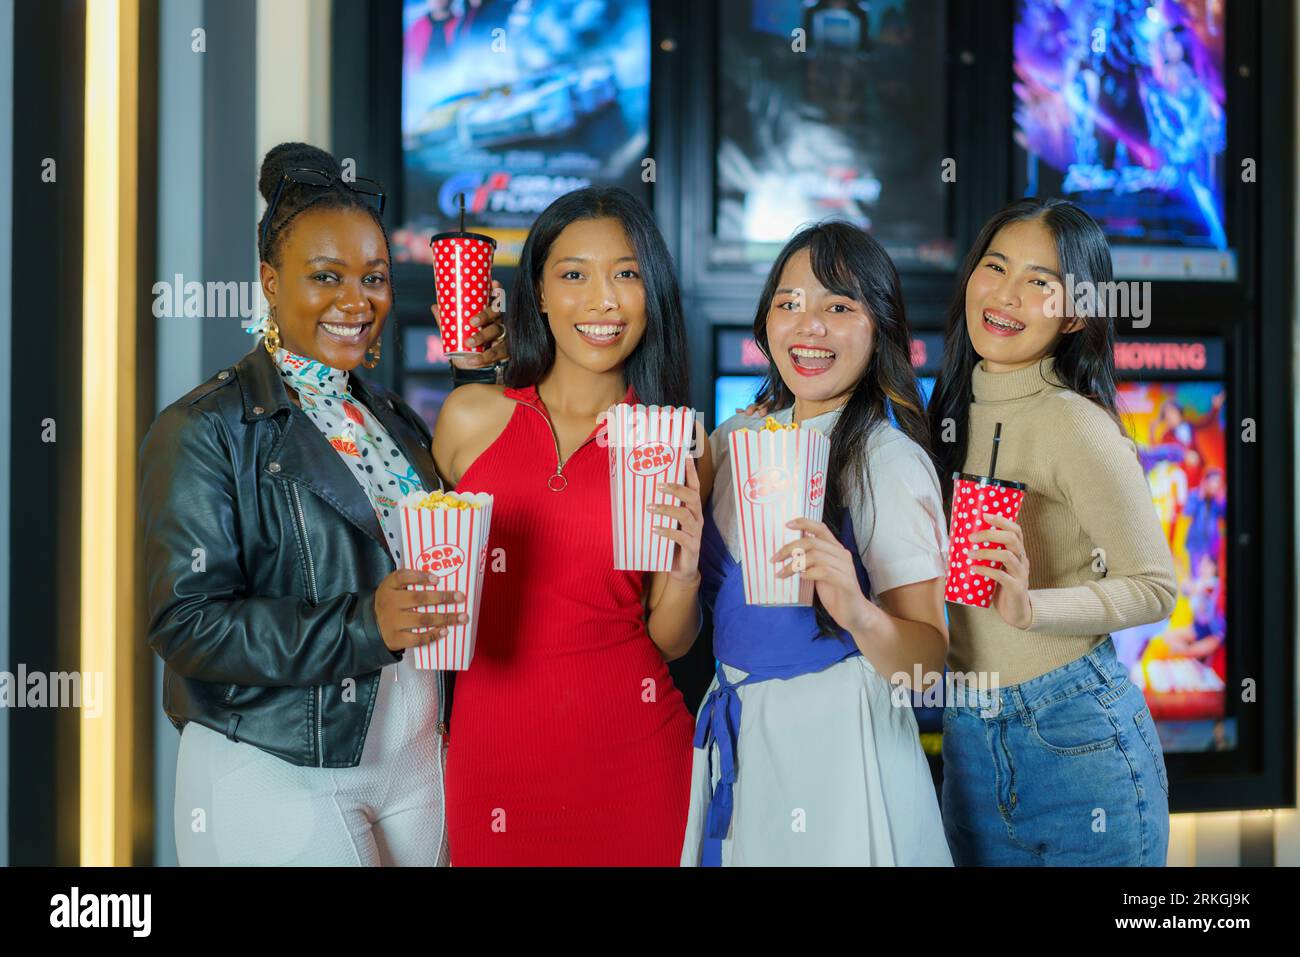 Amici diversi, popcorn in mano, passeggiate gioiosamente davanti al cinema, incarnando l'amicizia e l'attesa piena di divertimento per un film divertente Foto Stock